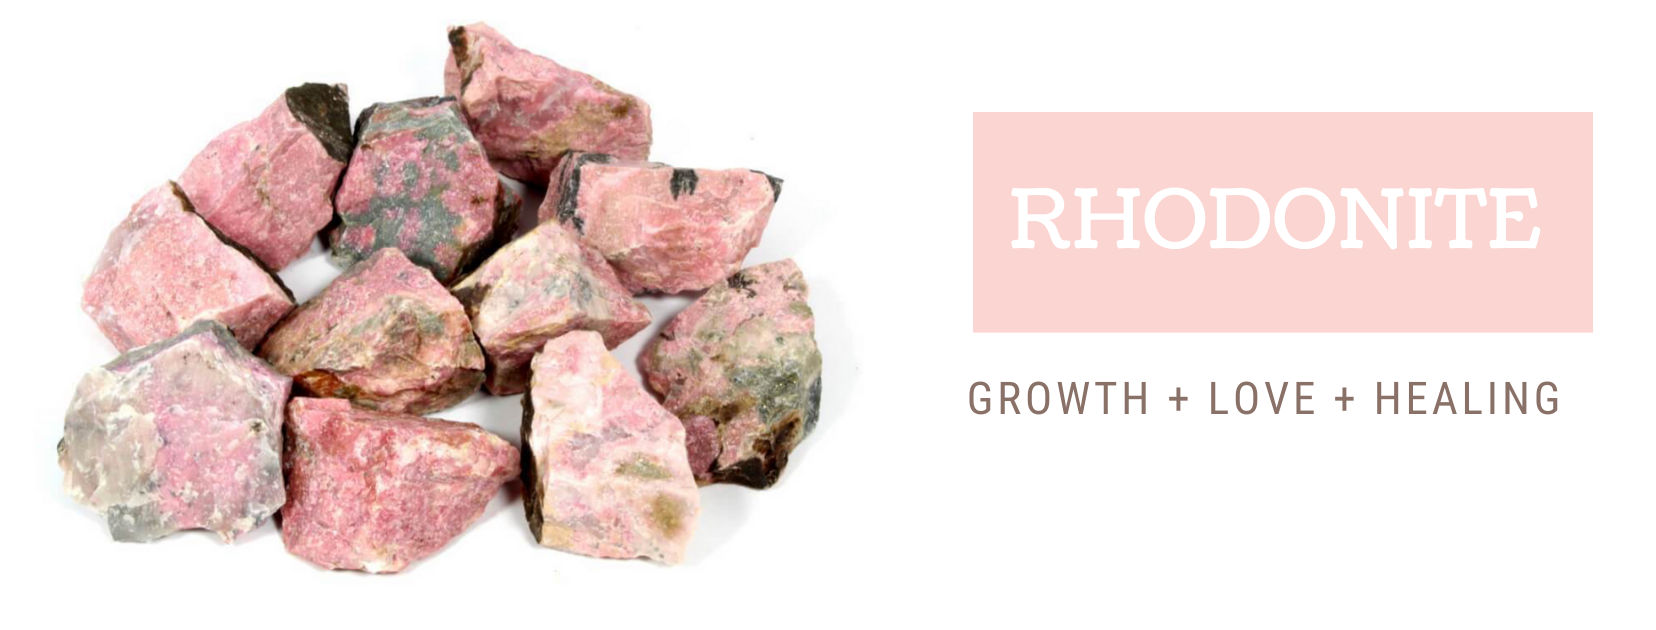 Rhodonite Healing Properties | Rhodonite Meaning | Benefits Of Rhodonite - Magic Crystals